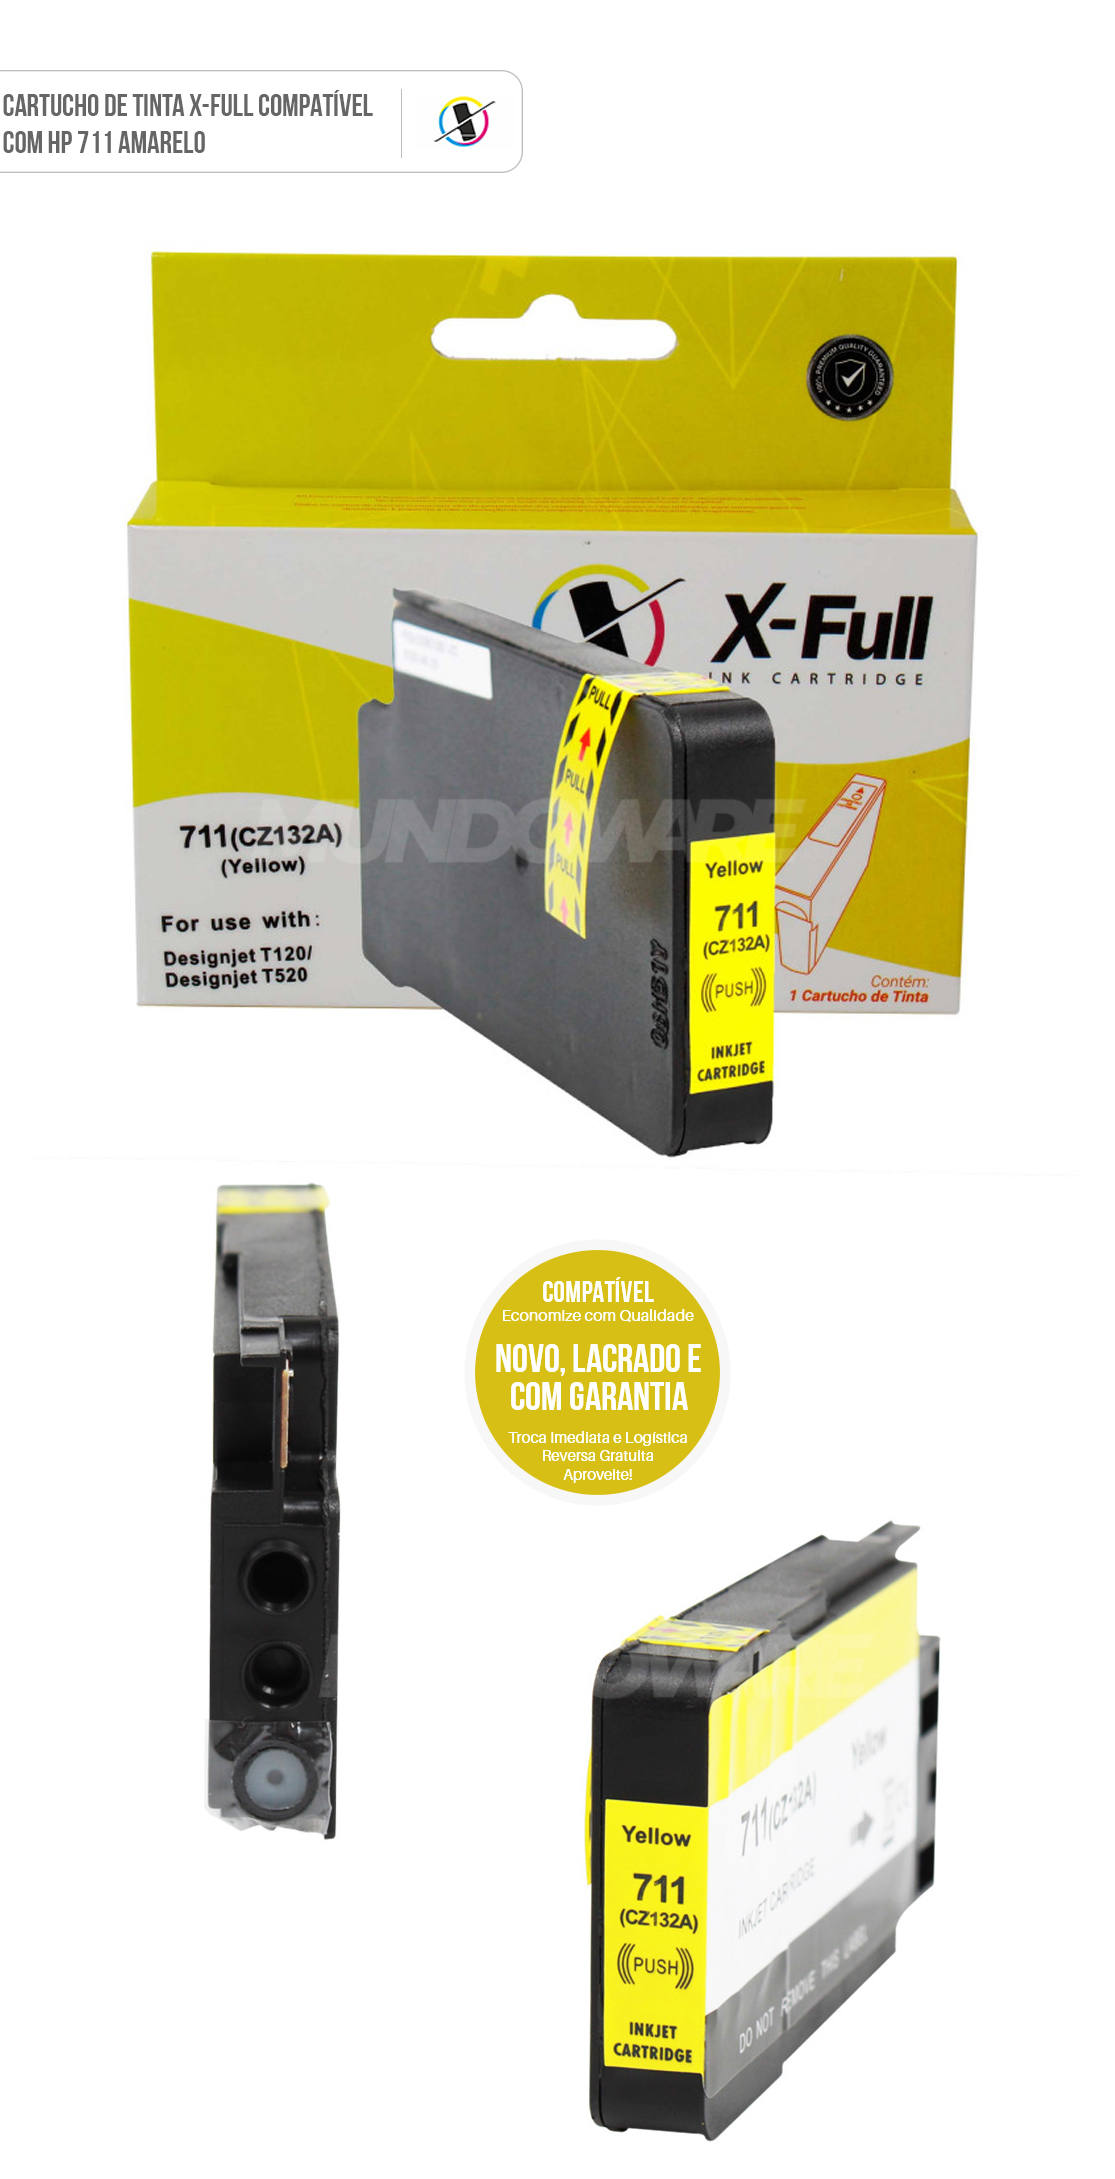 Cartucho de Tinta X-Full Compatível com HP 711xl 711 para T120 A1 T130 A1 T520 A1 T520 A0 Amarelo 27ml 